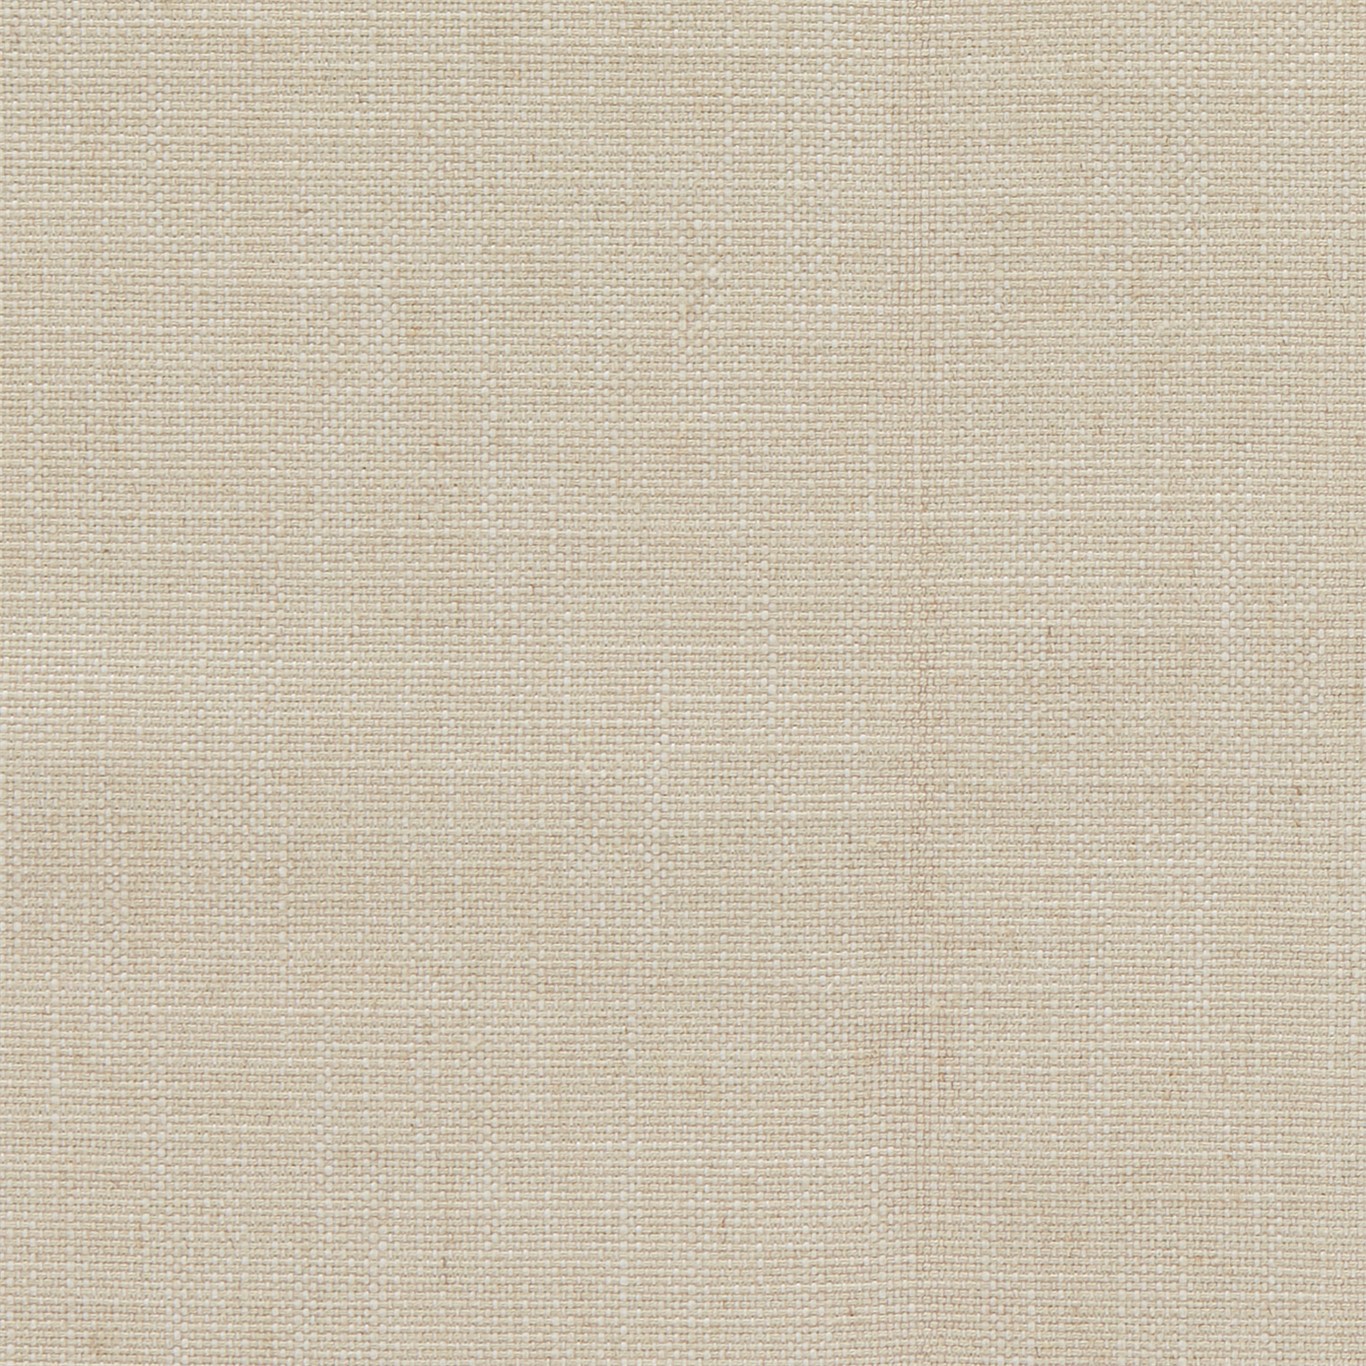 Lowen Linen Fabric by SAN